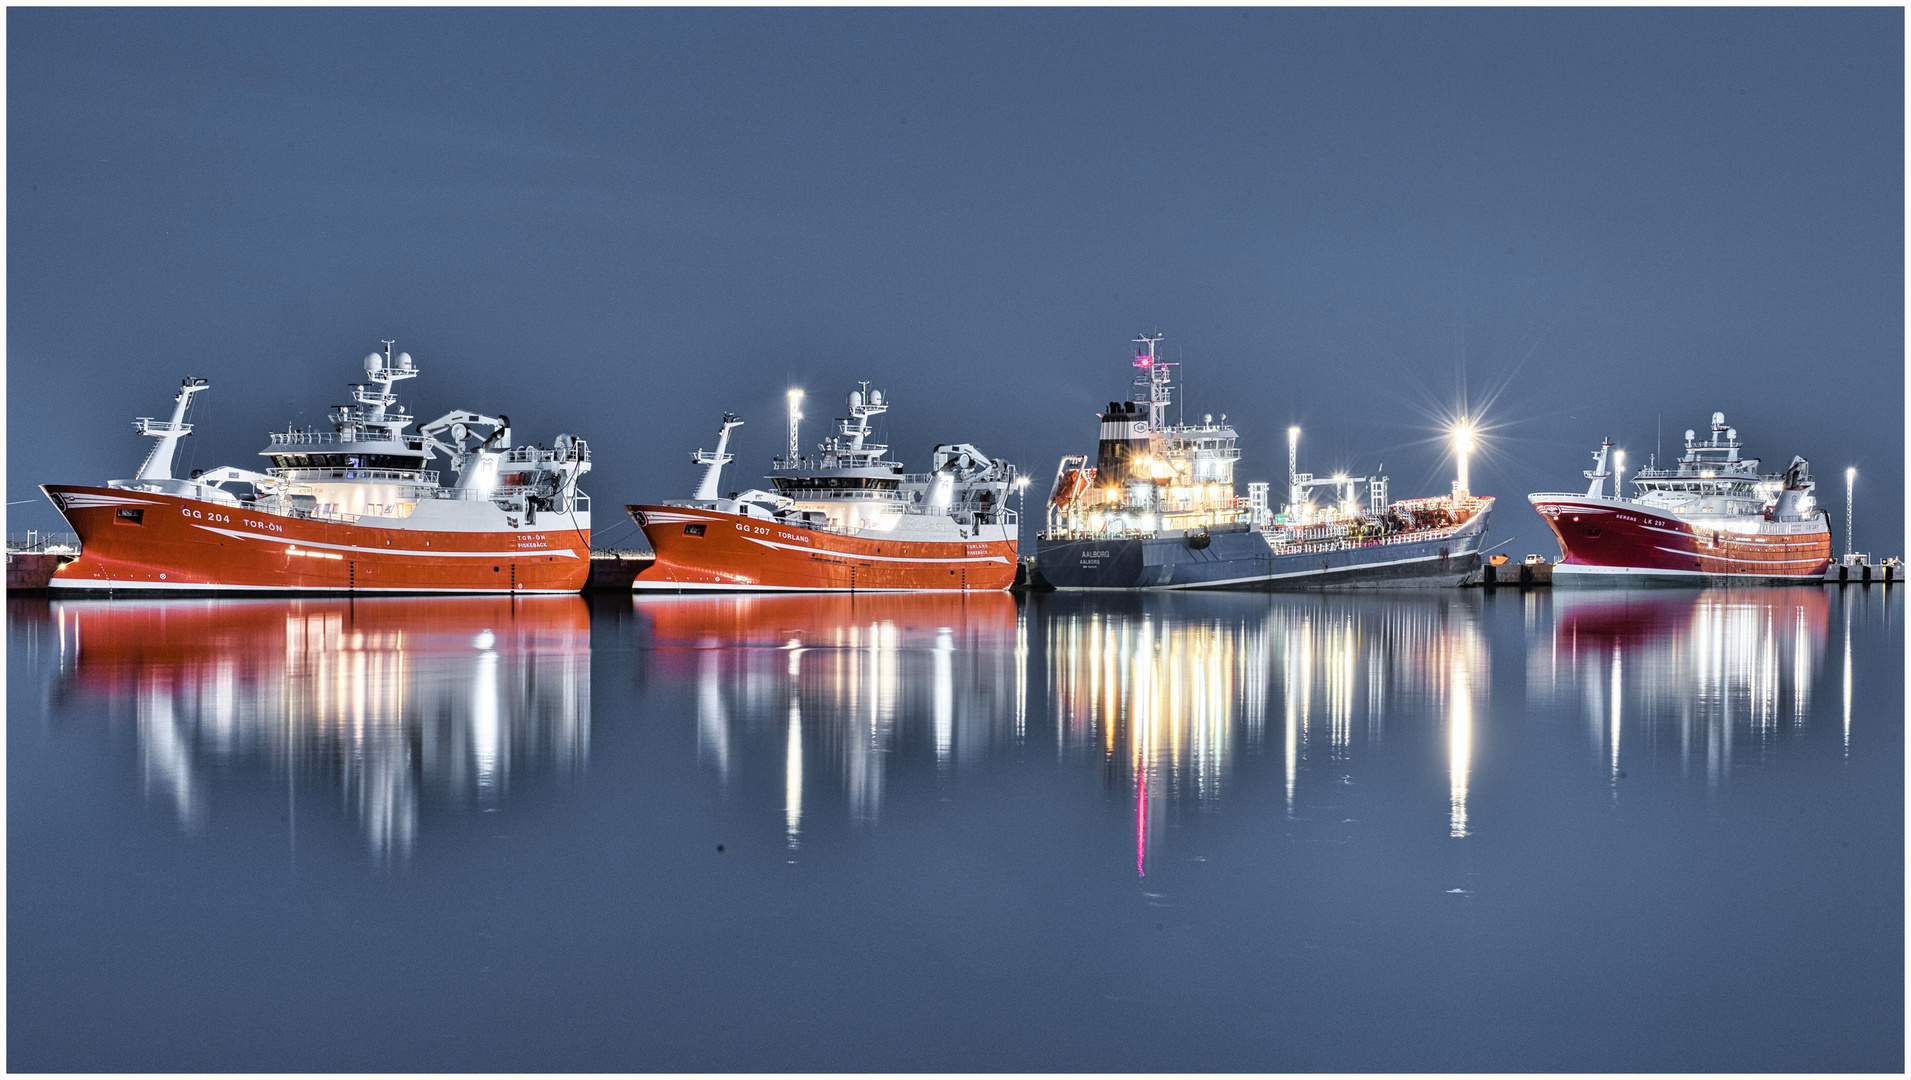 Abend im Hafen von Skagen